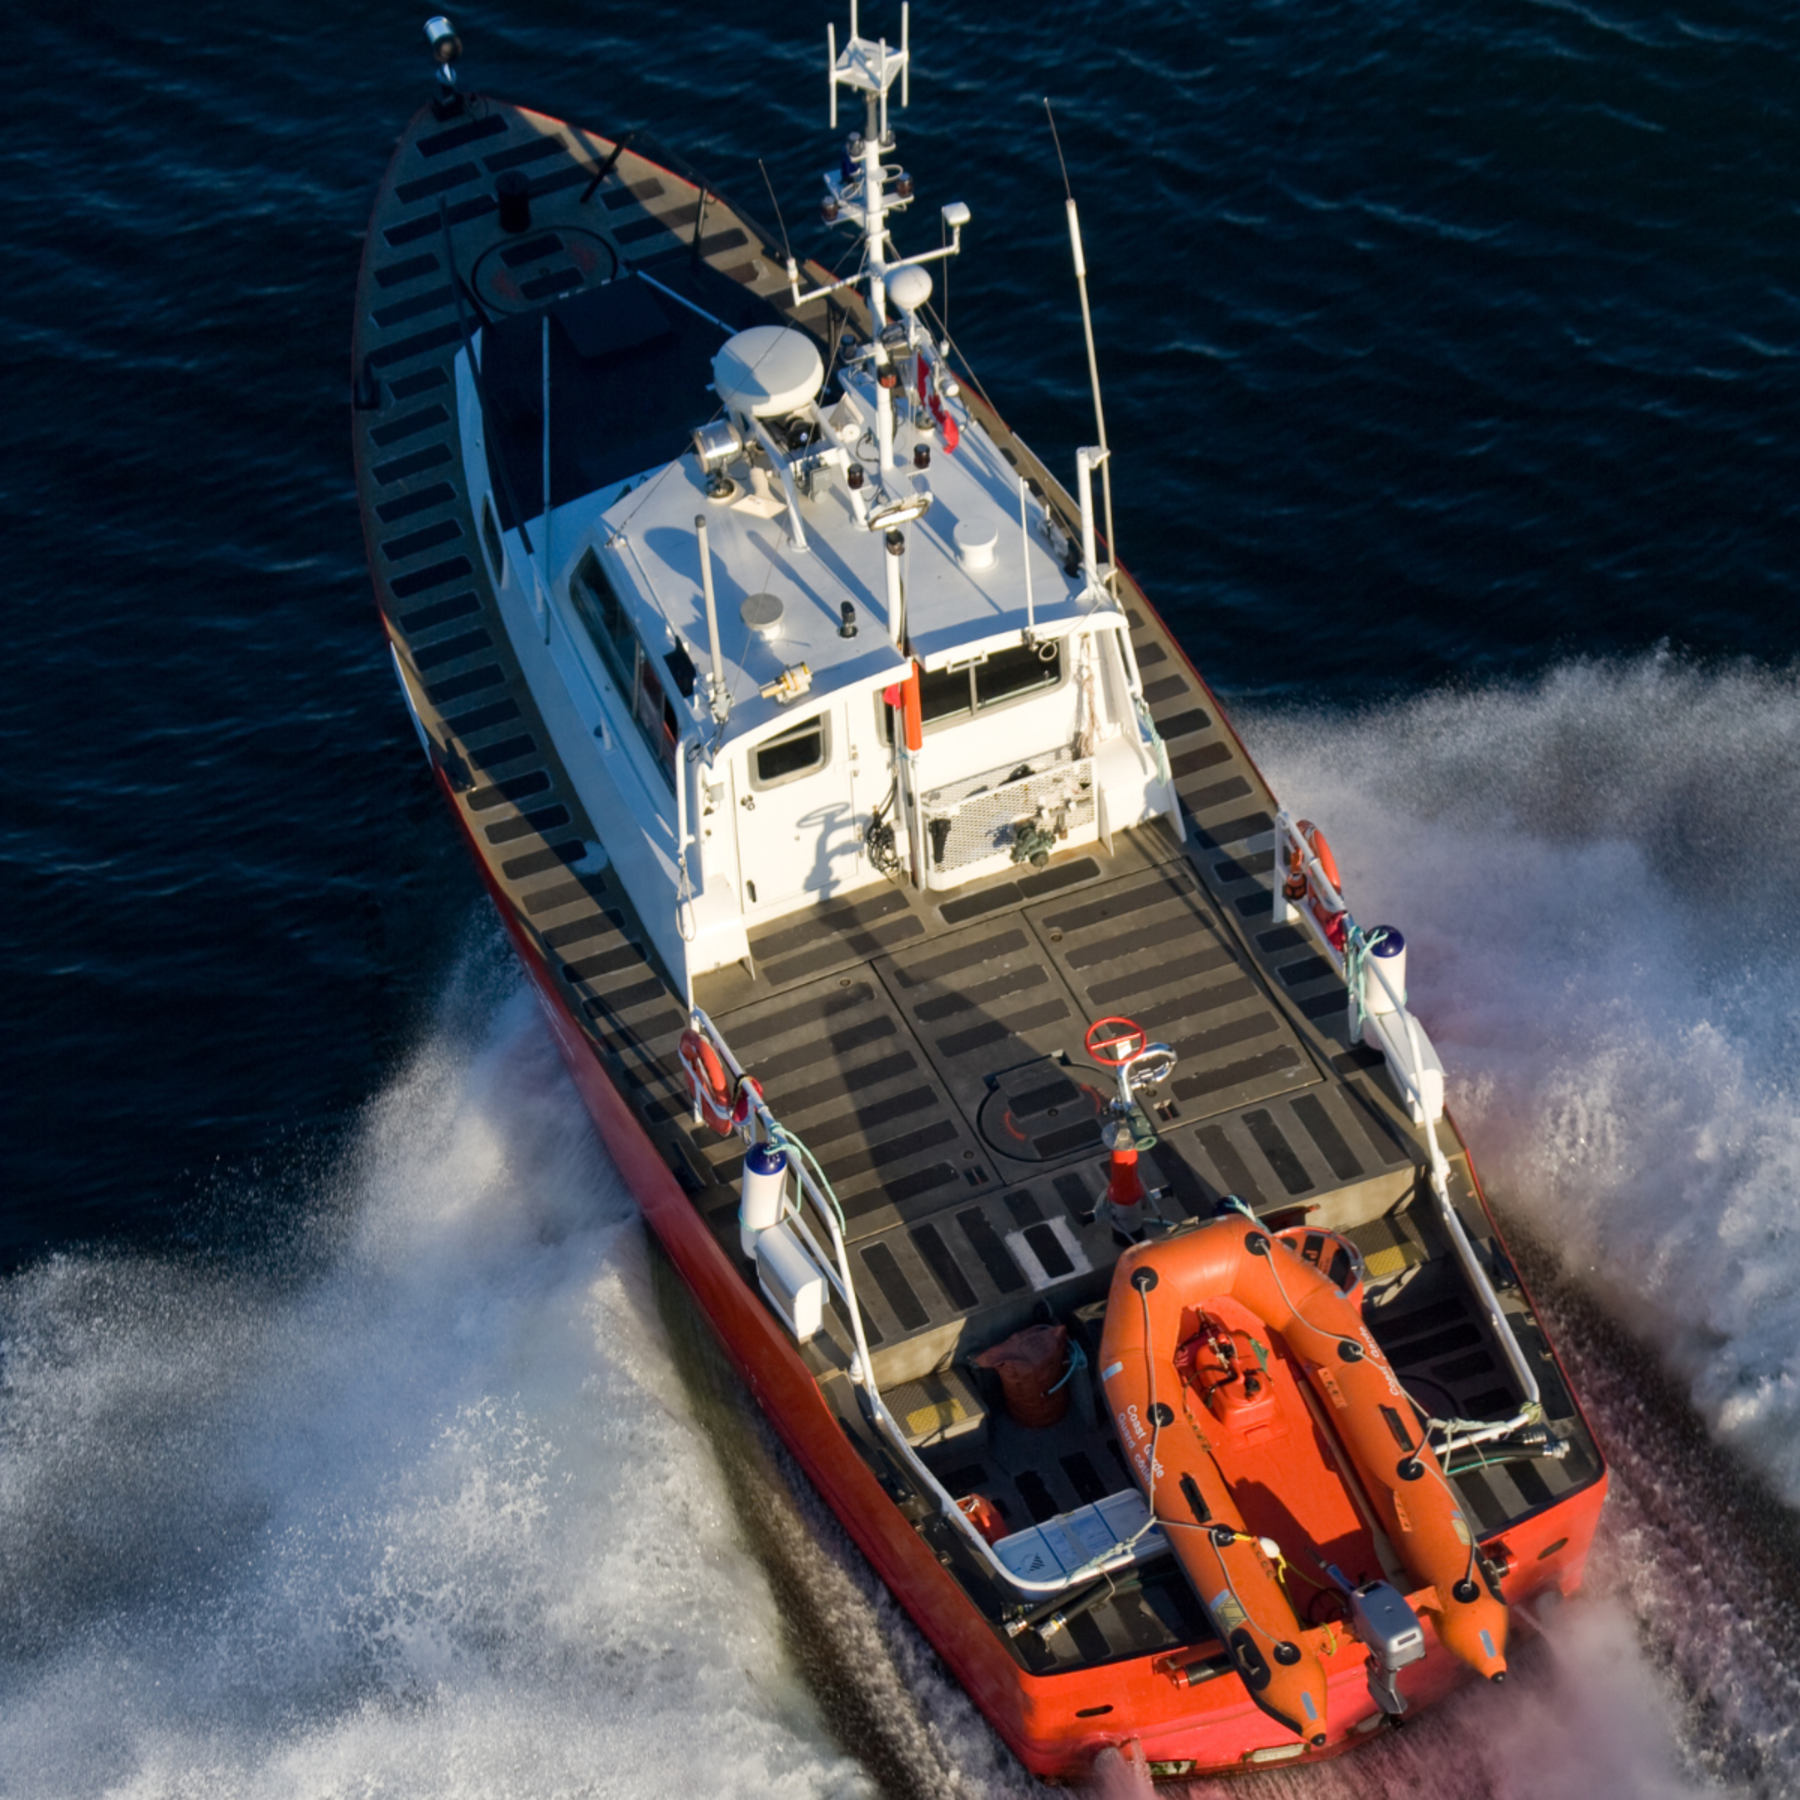 A photo of a US Coast Guard boat